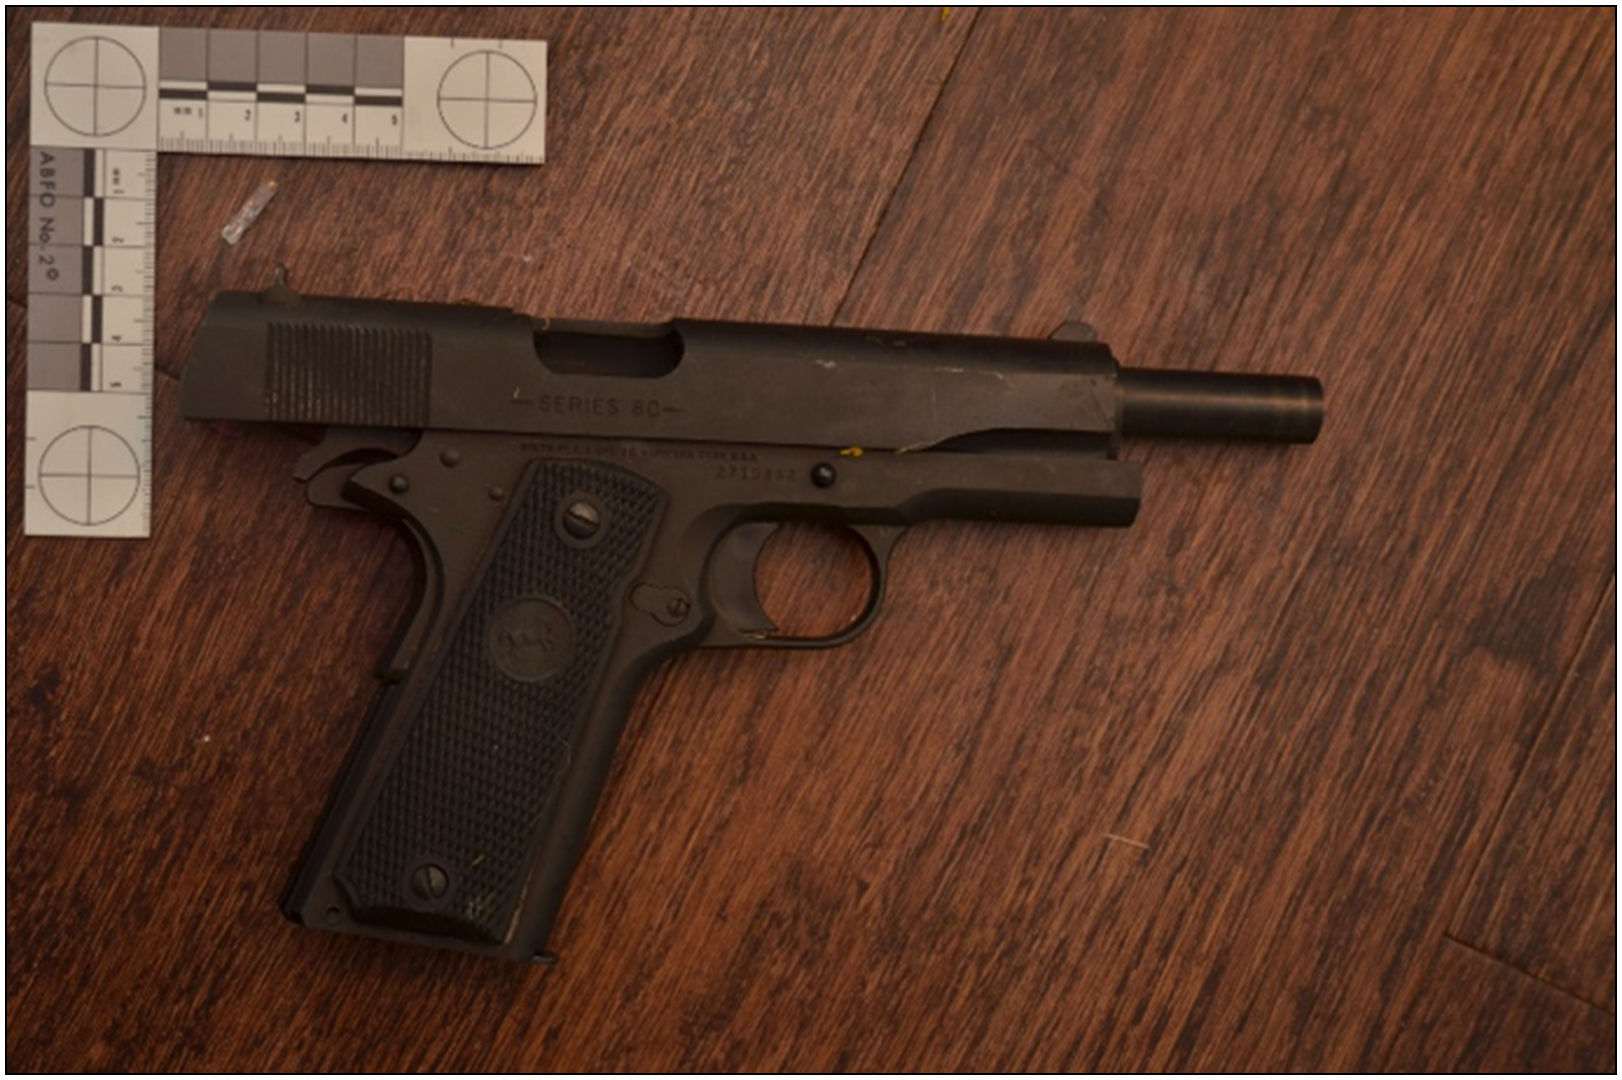 Colt Model 1911 .45 calibre pistol